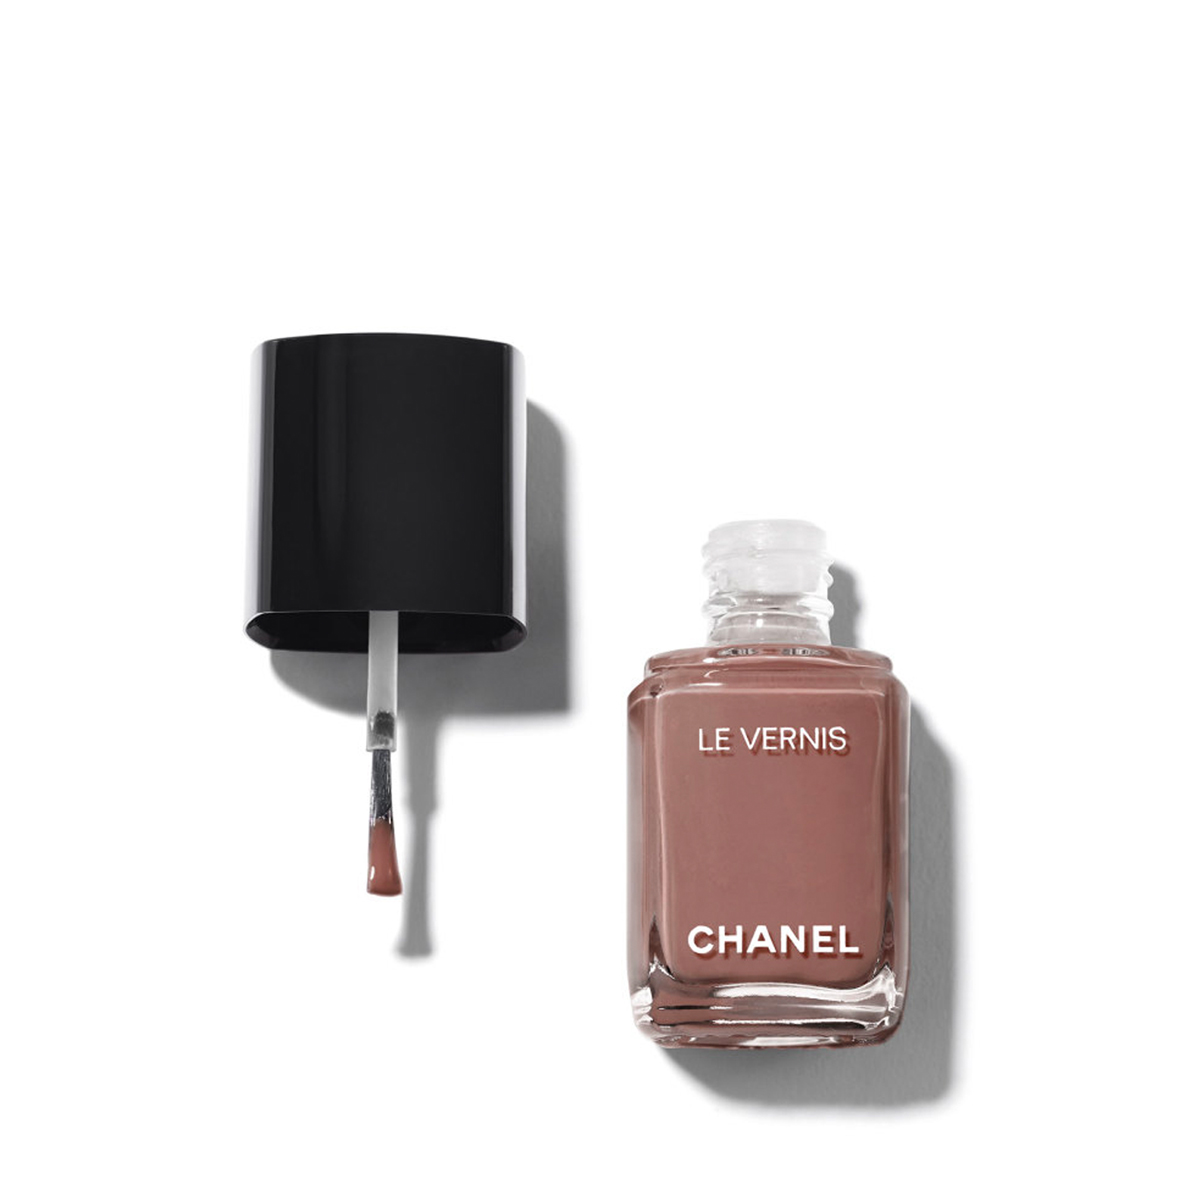 Chanel Le Vernis Longwear Nail Colour in Particulière